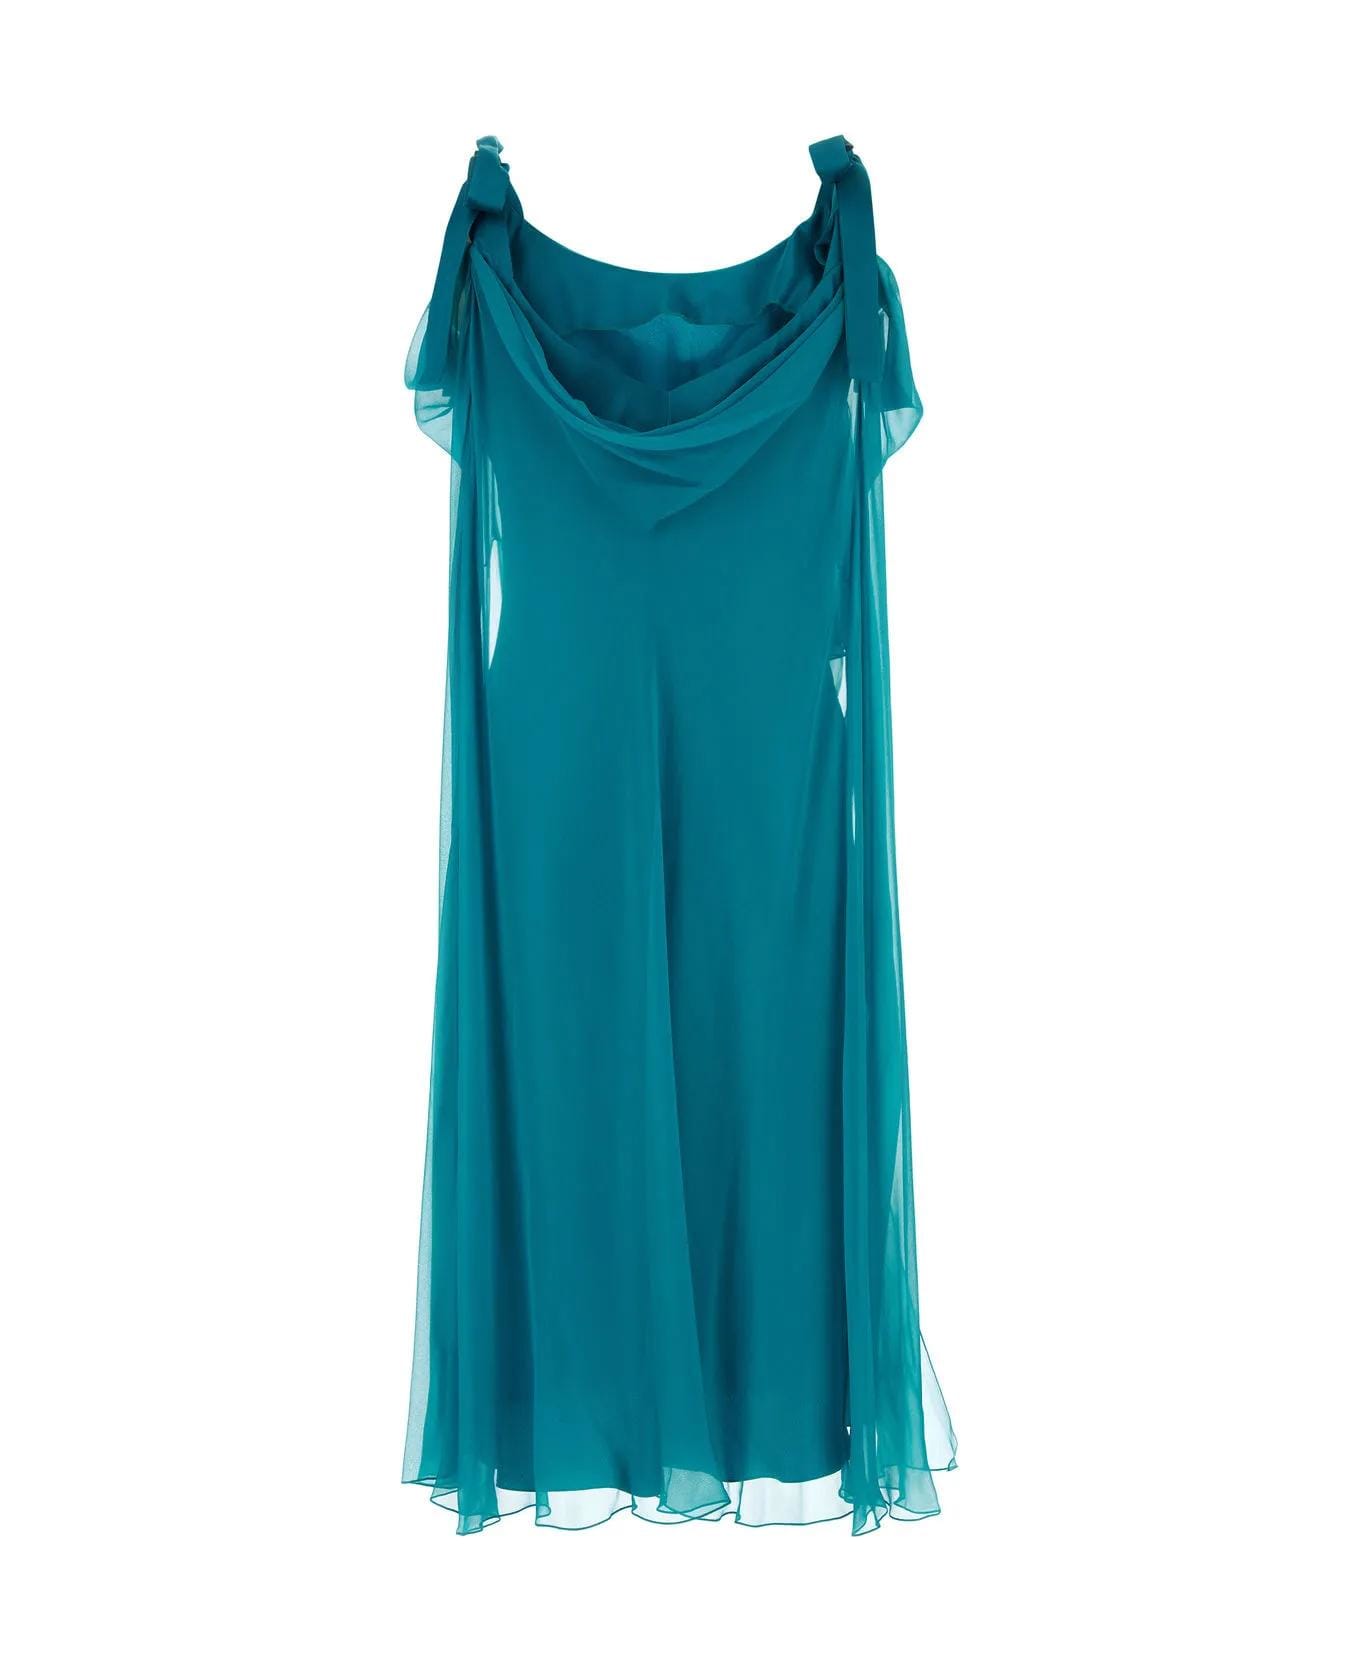 Alberta Ferretti Teal Green Silk Dress - Blue